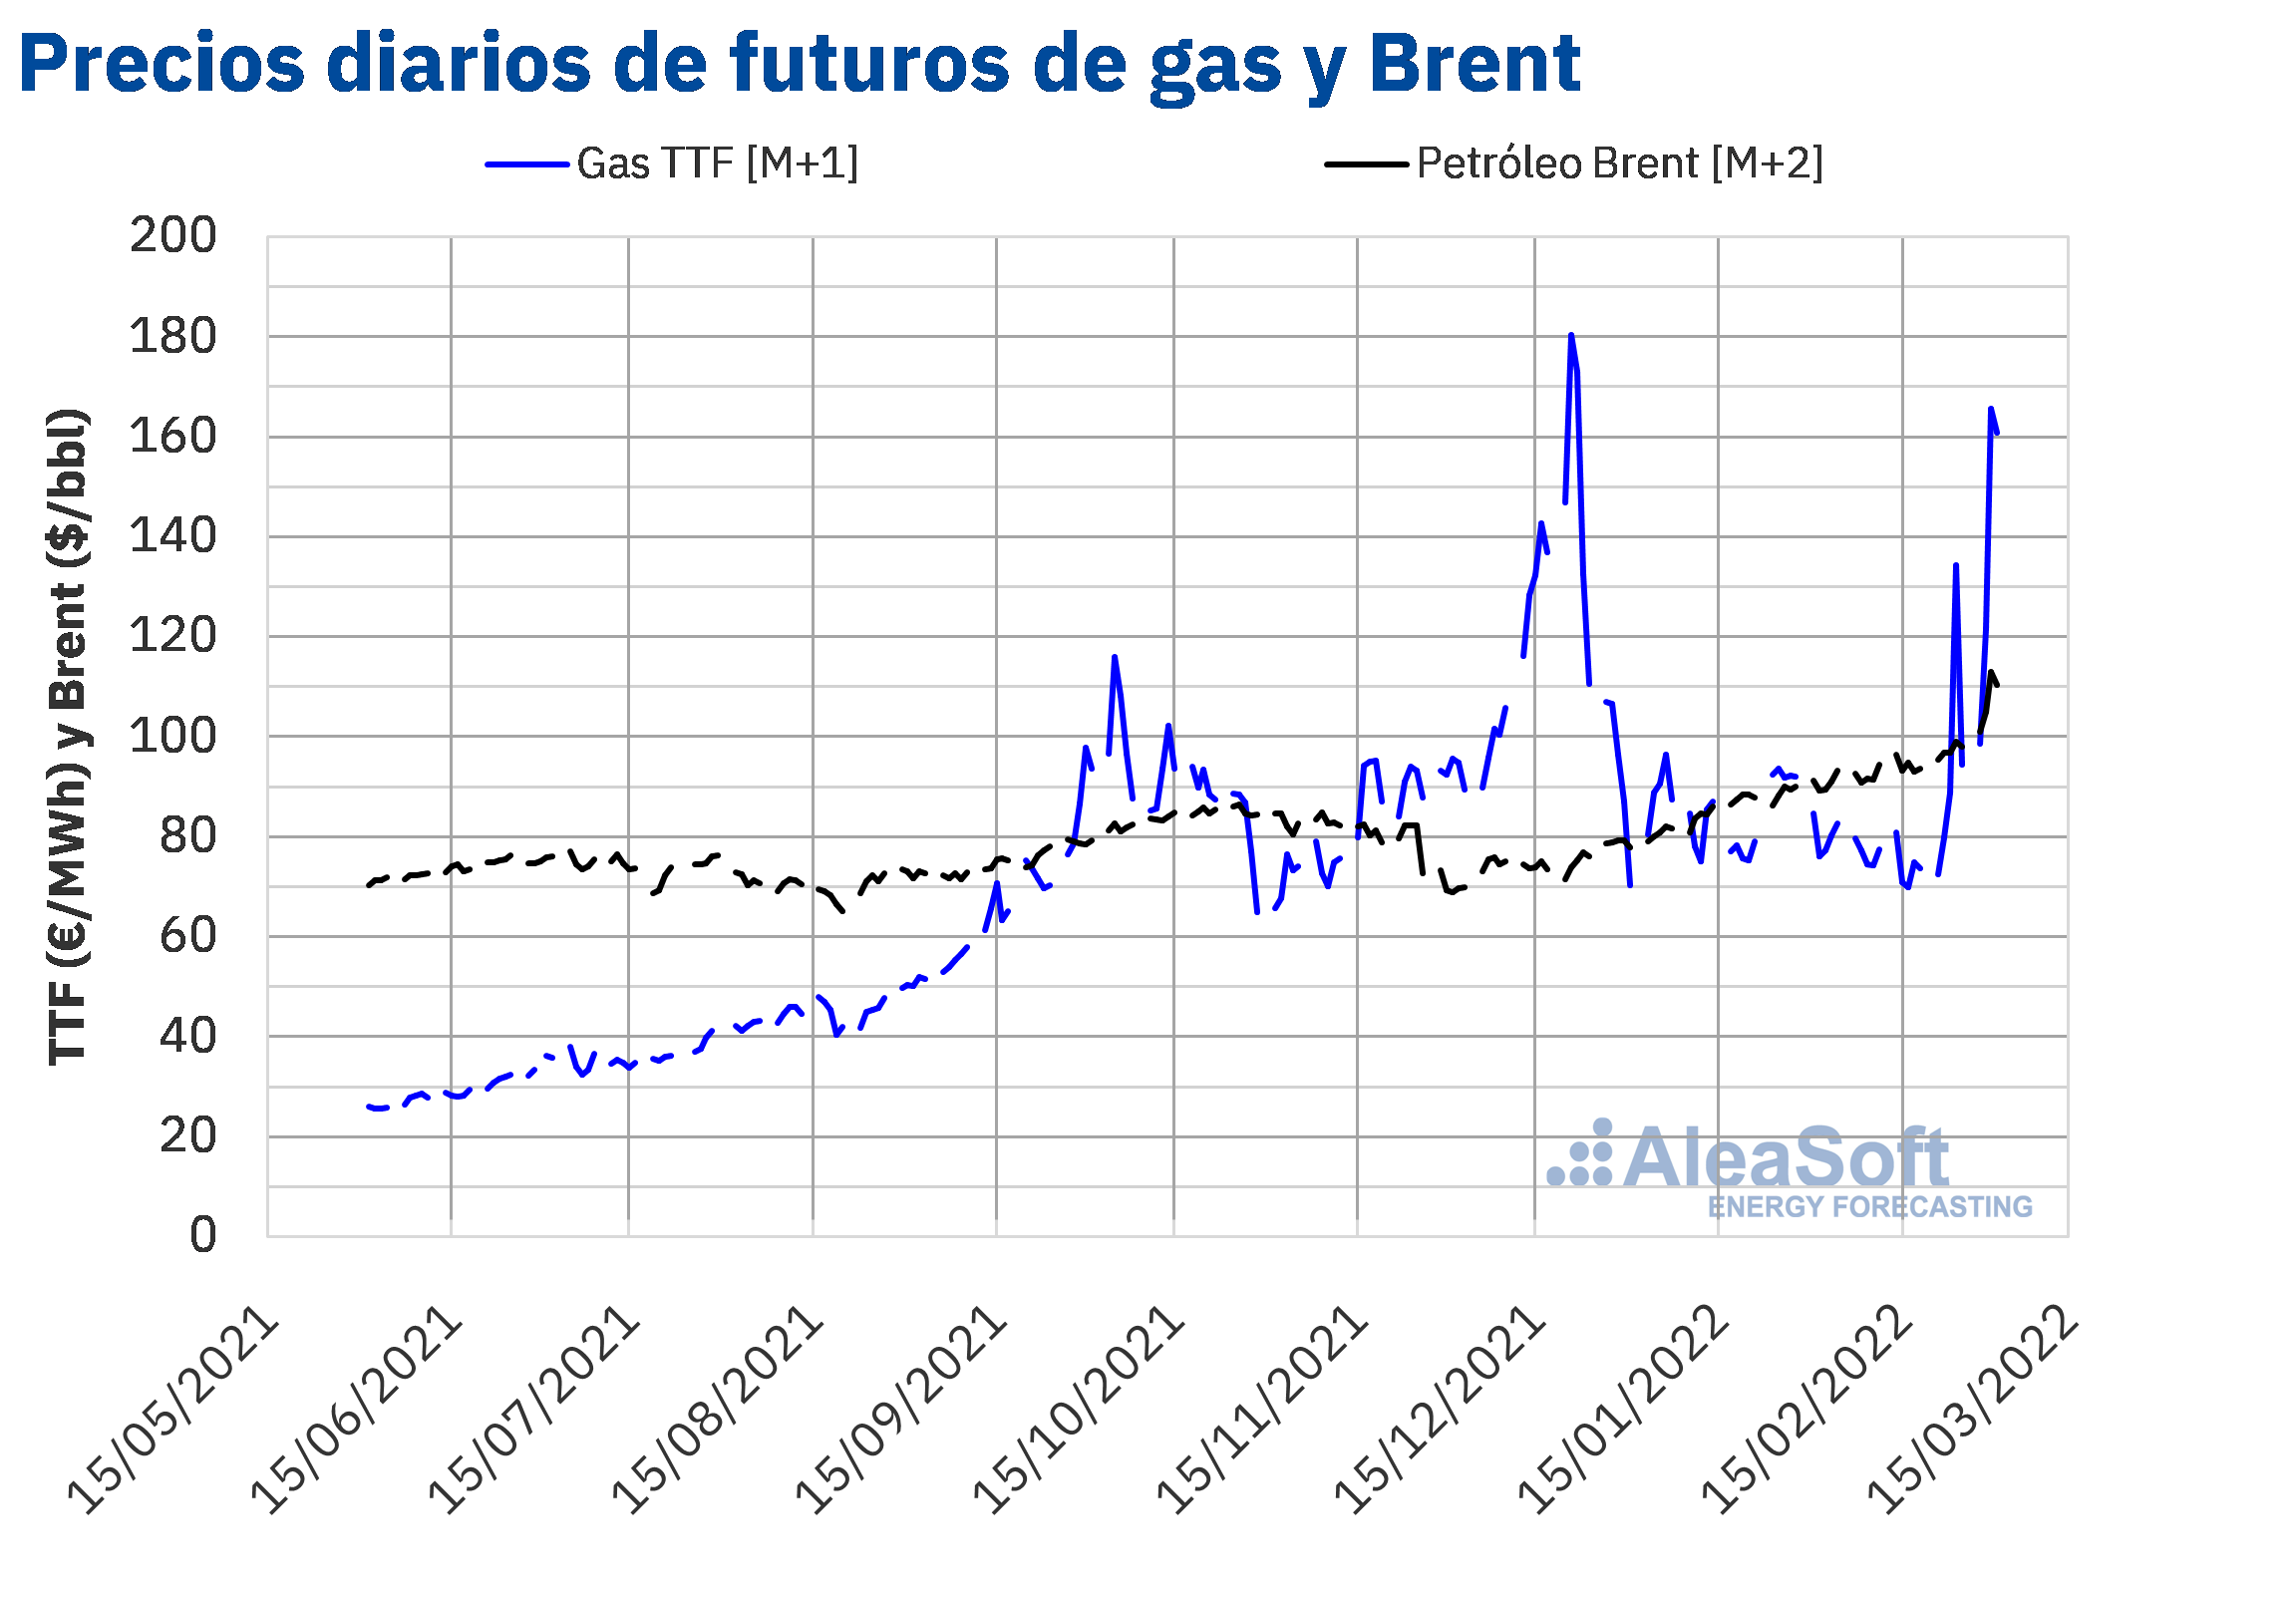 AleaSoft - Precios futuros gas ttf m1 petroleo brent m2